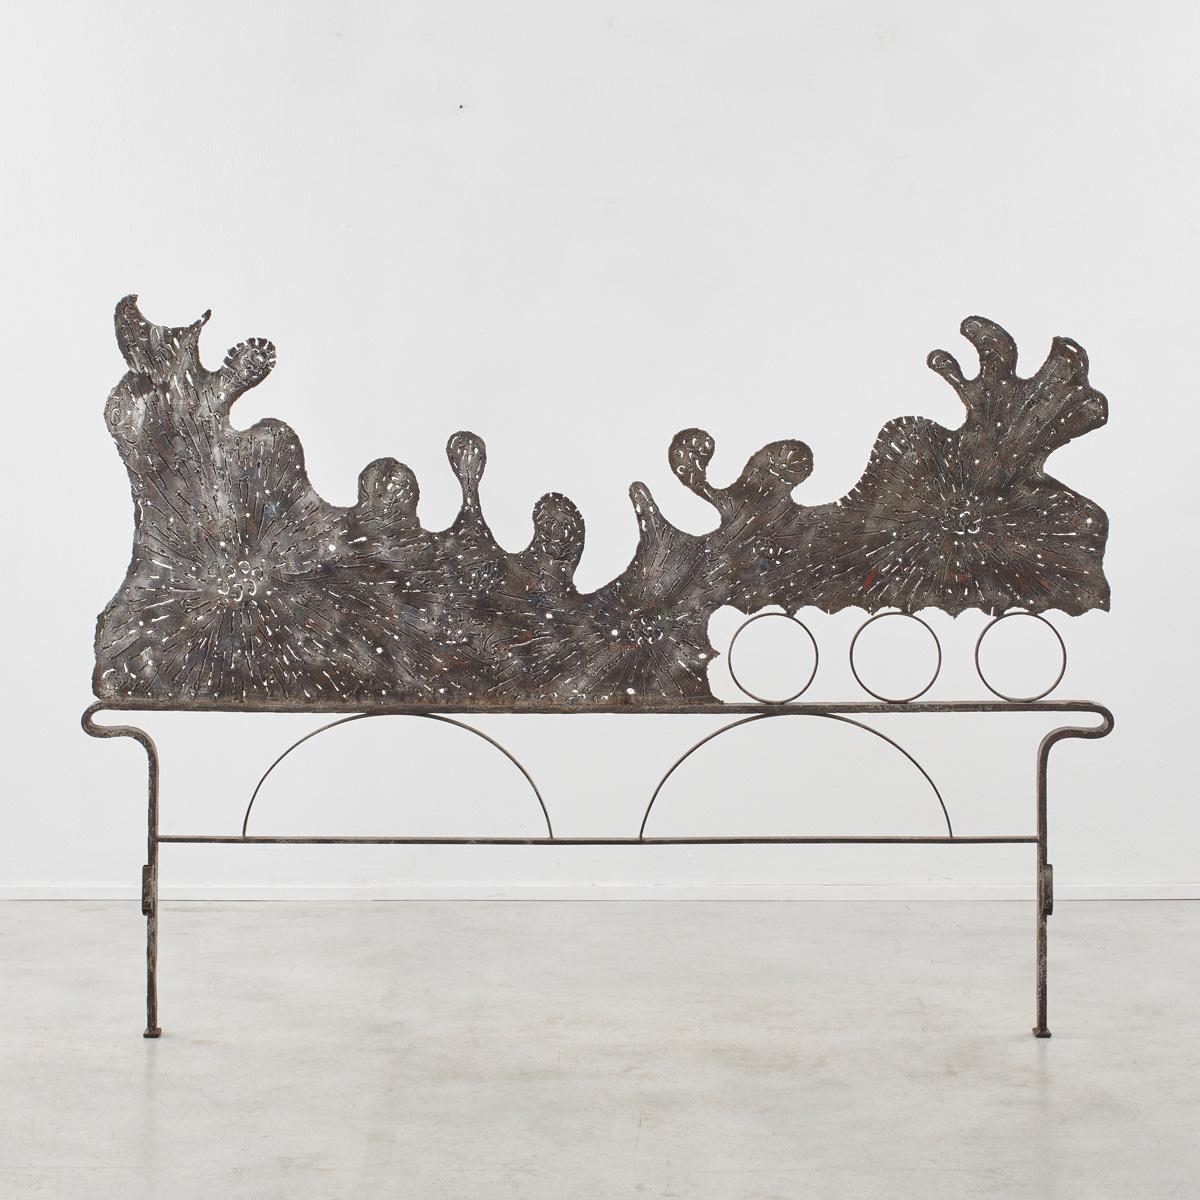 
Salvino Marsura est né à Trévise en 1938 et a appris son métier dans l'atelier dynamique du sculpteur Toni Benetton. Ses œuvres d'art et ses meubles en fer s'inspirent de l'esthétique manuelle de la forge, donnant la parole au métal brut et aux